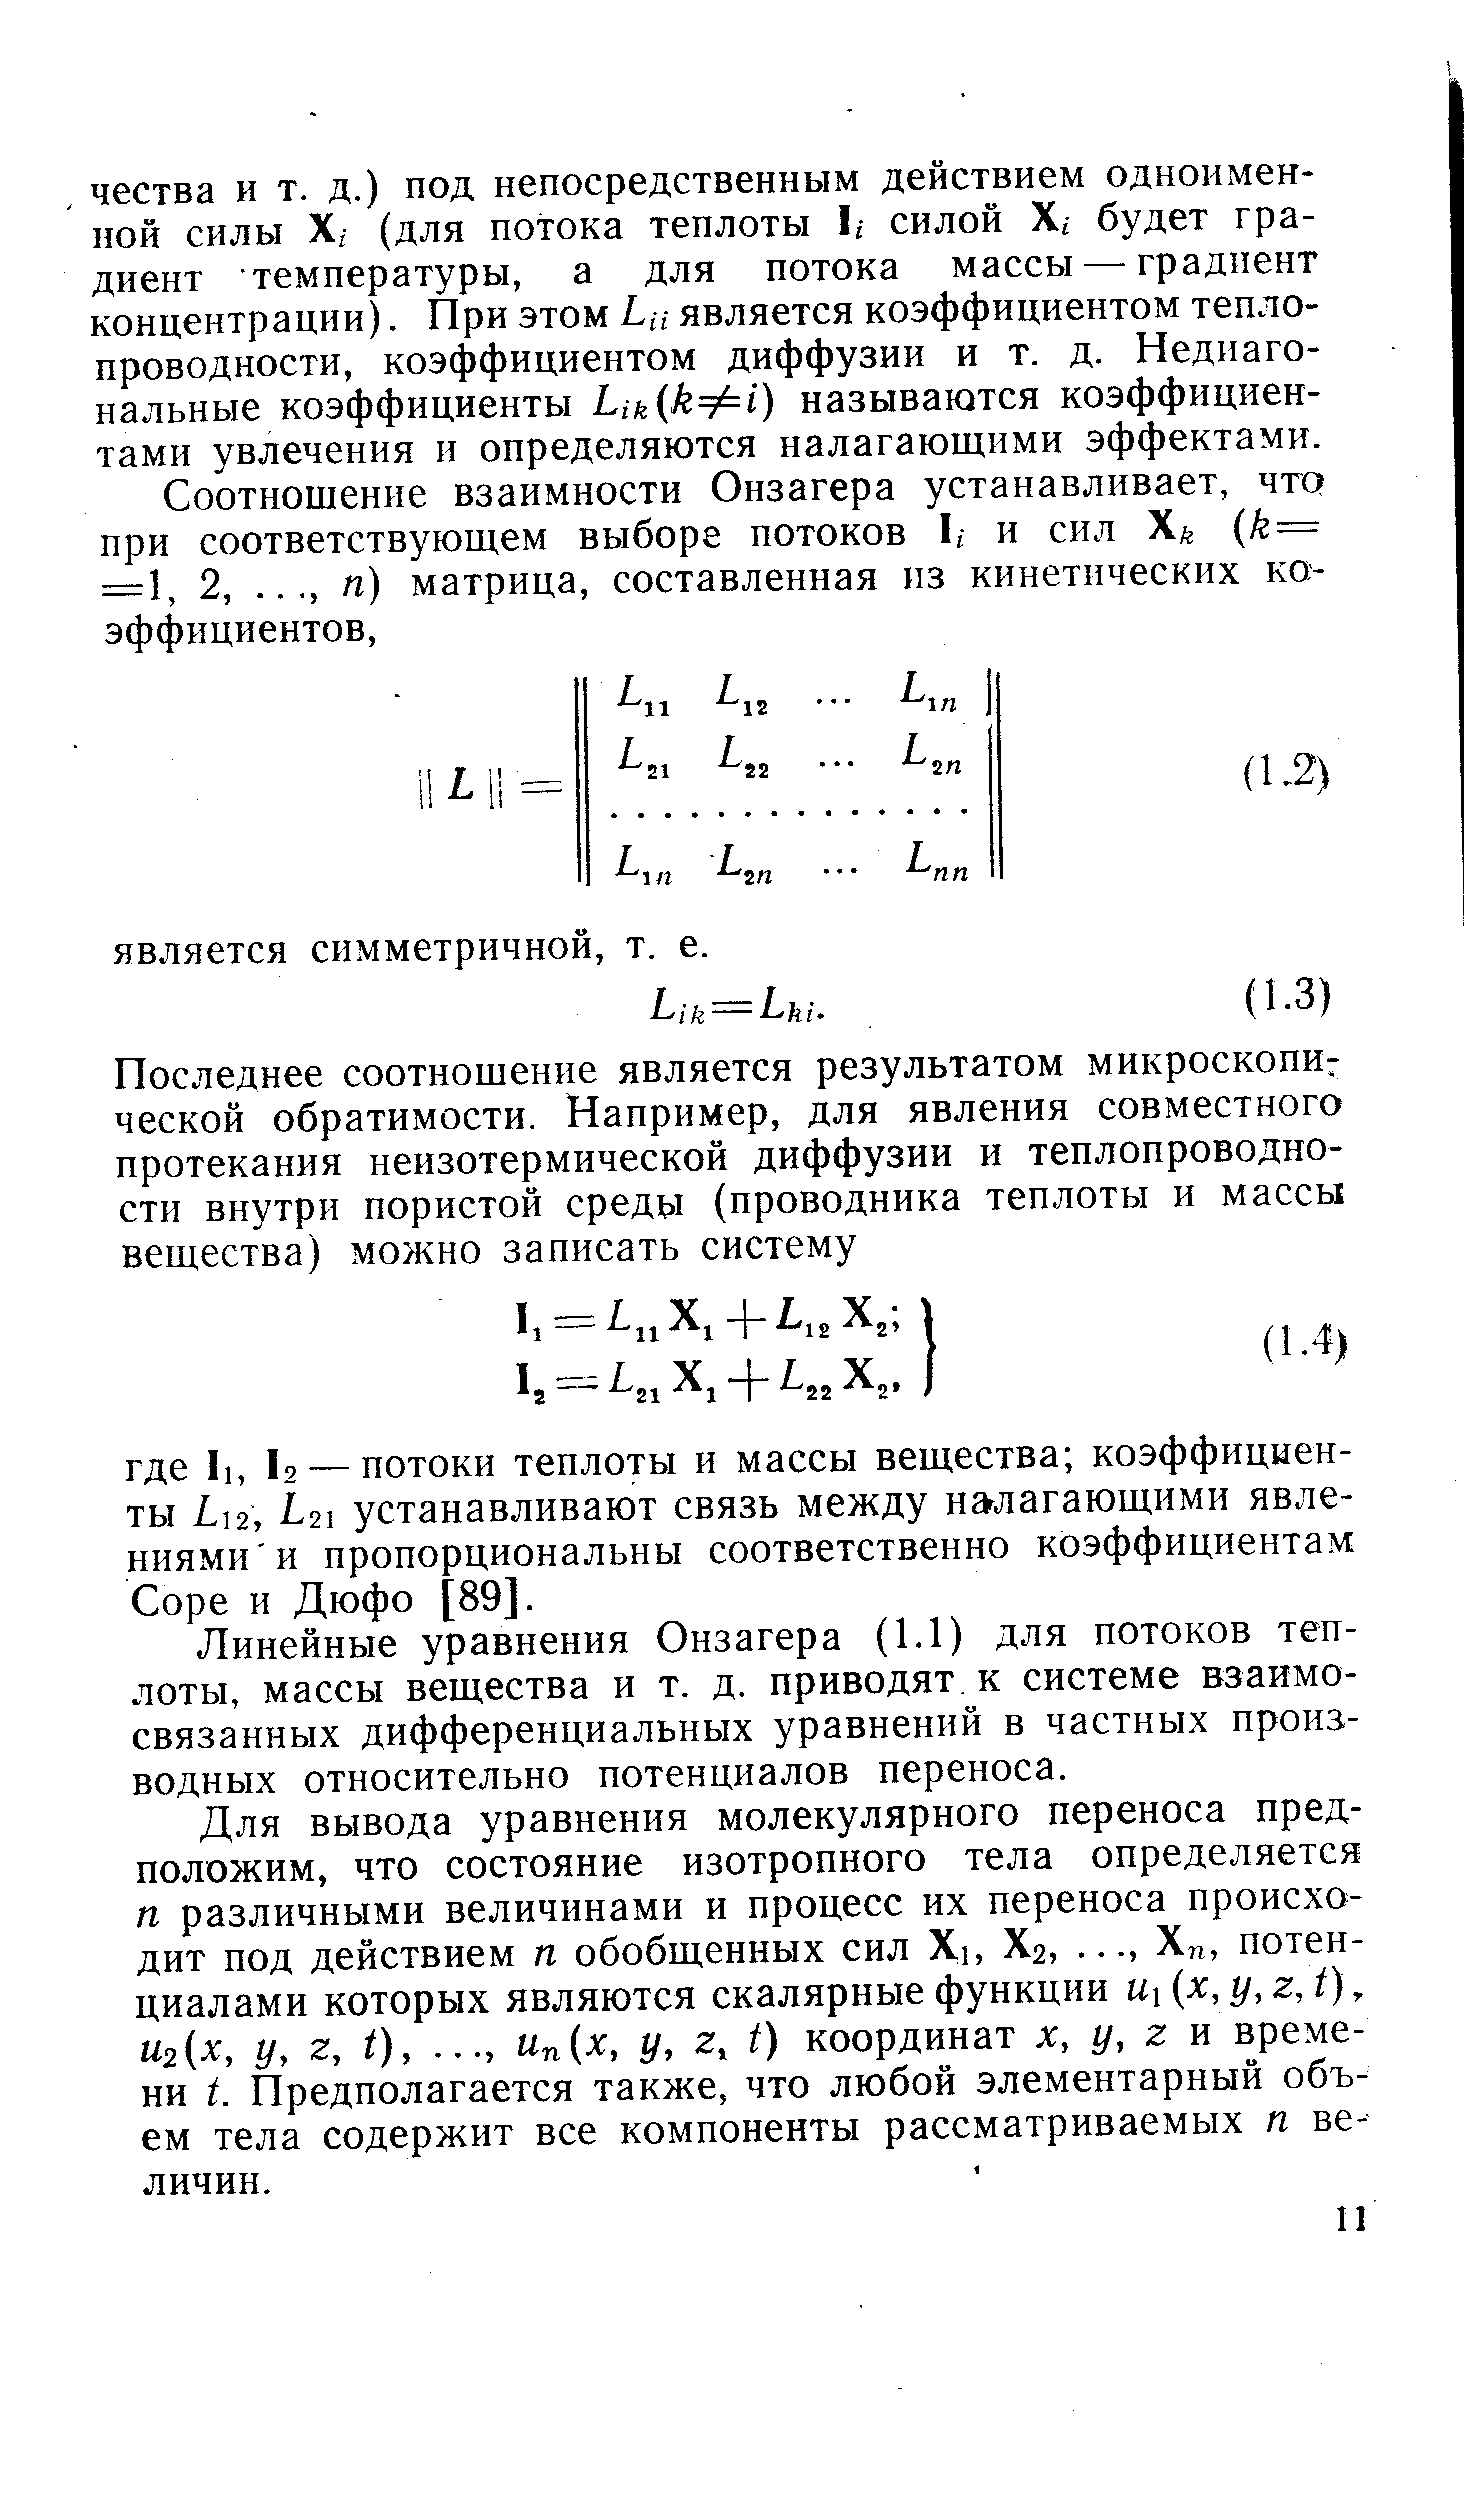 Линейные уравнения Онзагера (1.1) для потоков теплоты, массы вещества и т. д. приводят к системе взаимосвязанных дифференциальных уравнений в частных производных относительно потенциалов переноса.